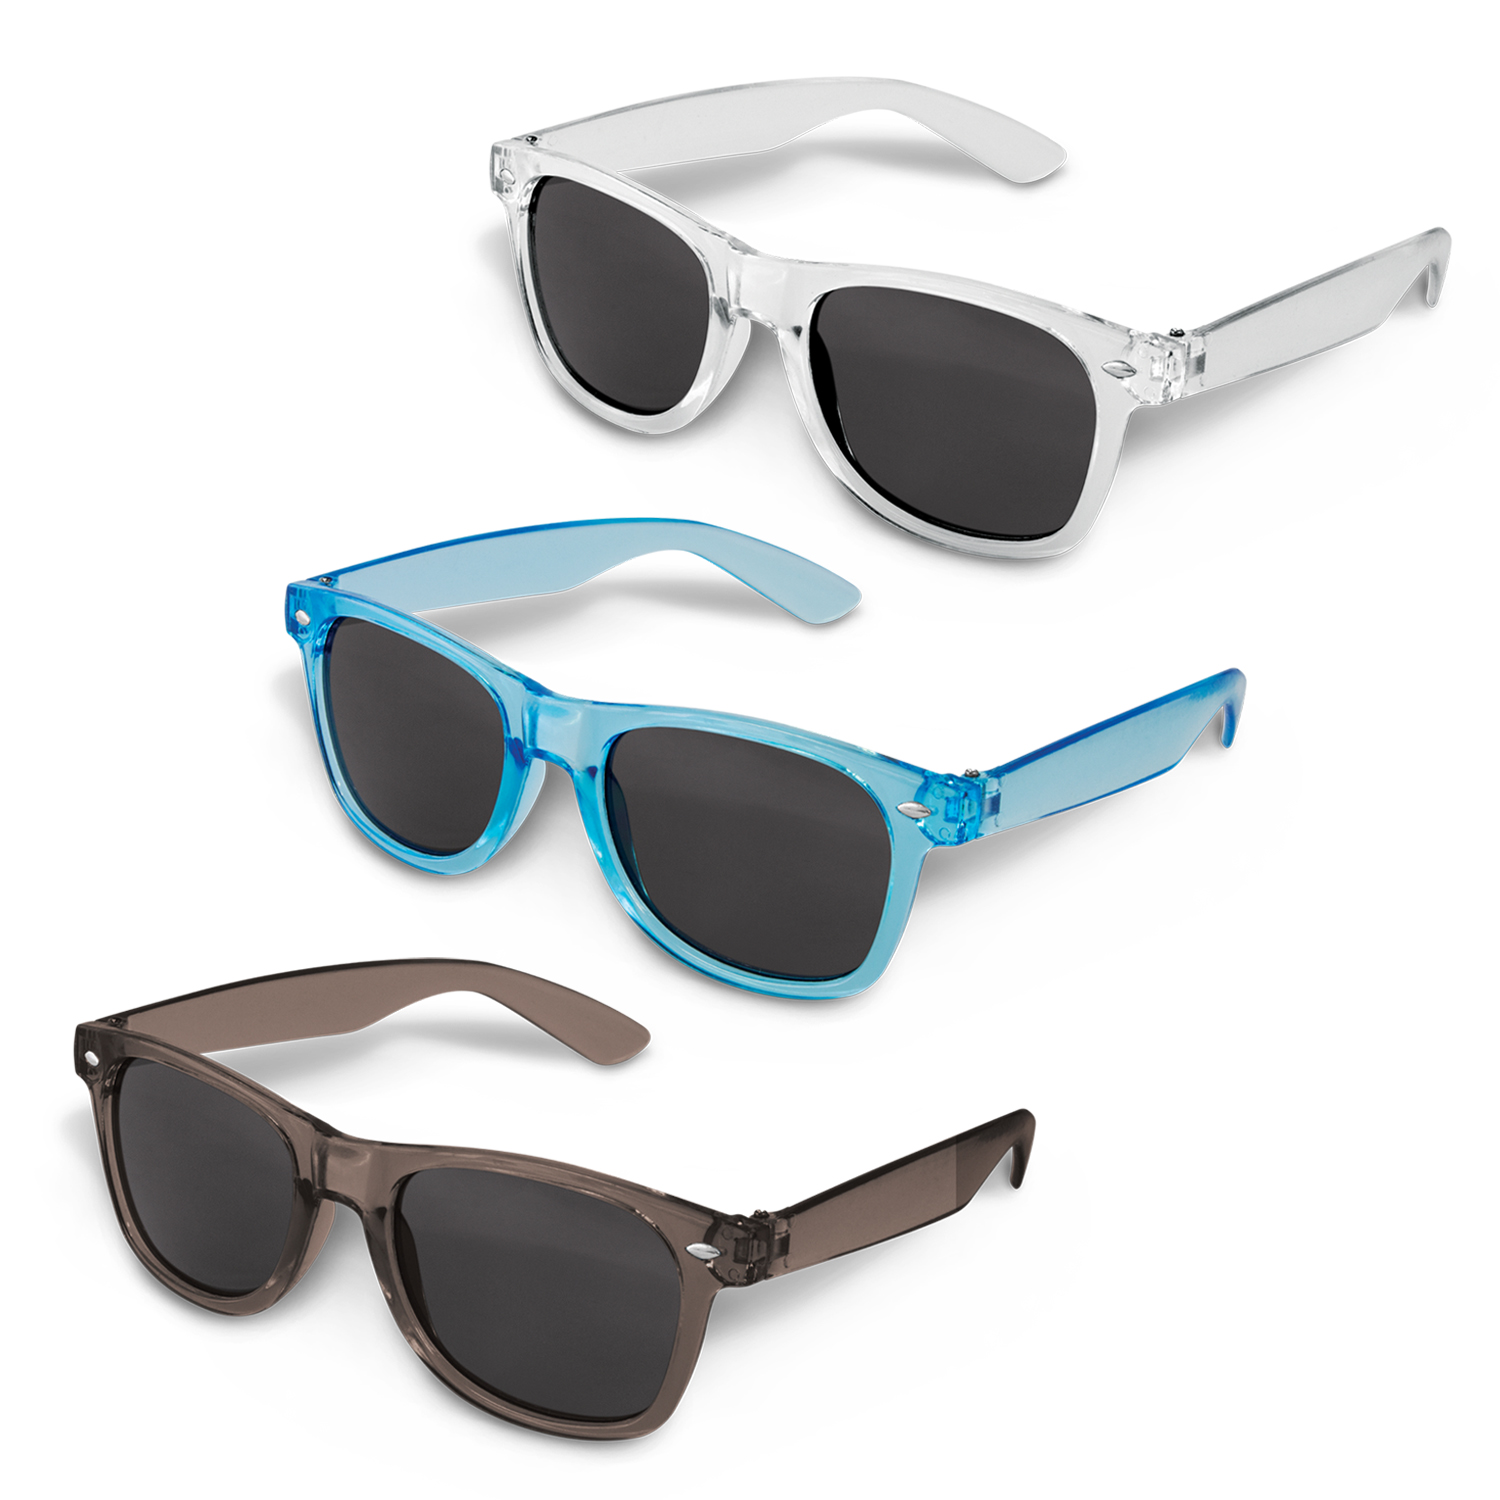 Malibu Premium Sunglasses – Translucent